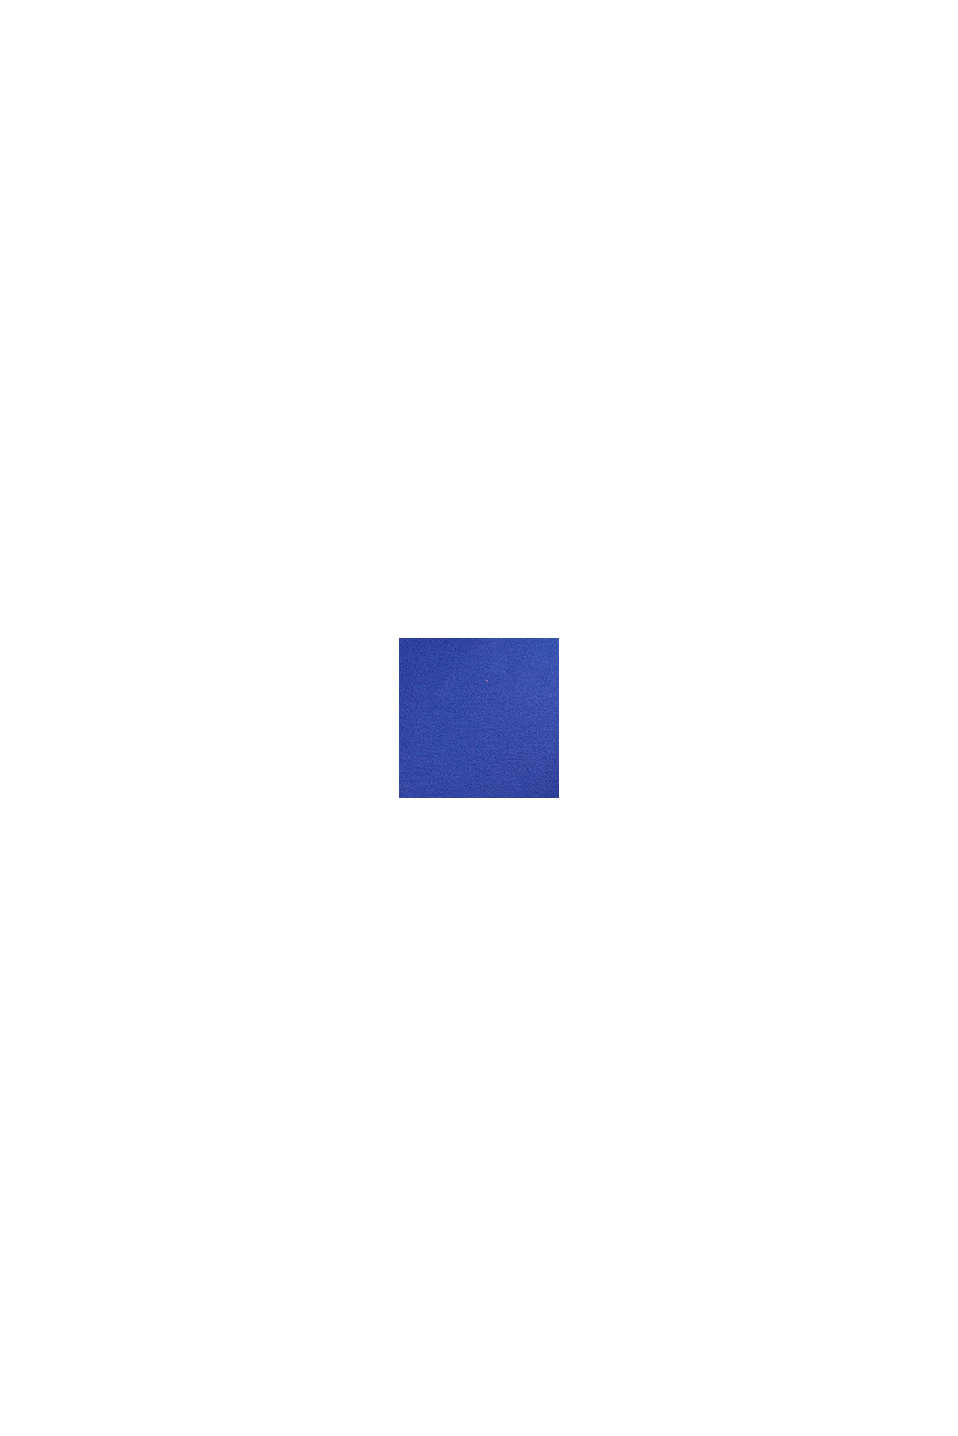 릴랙스 핏 네온 프린트 티, BLUE, swatch